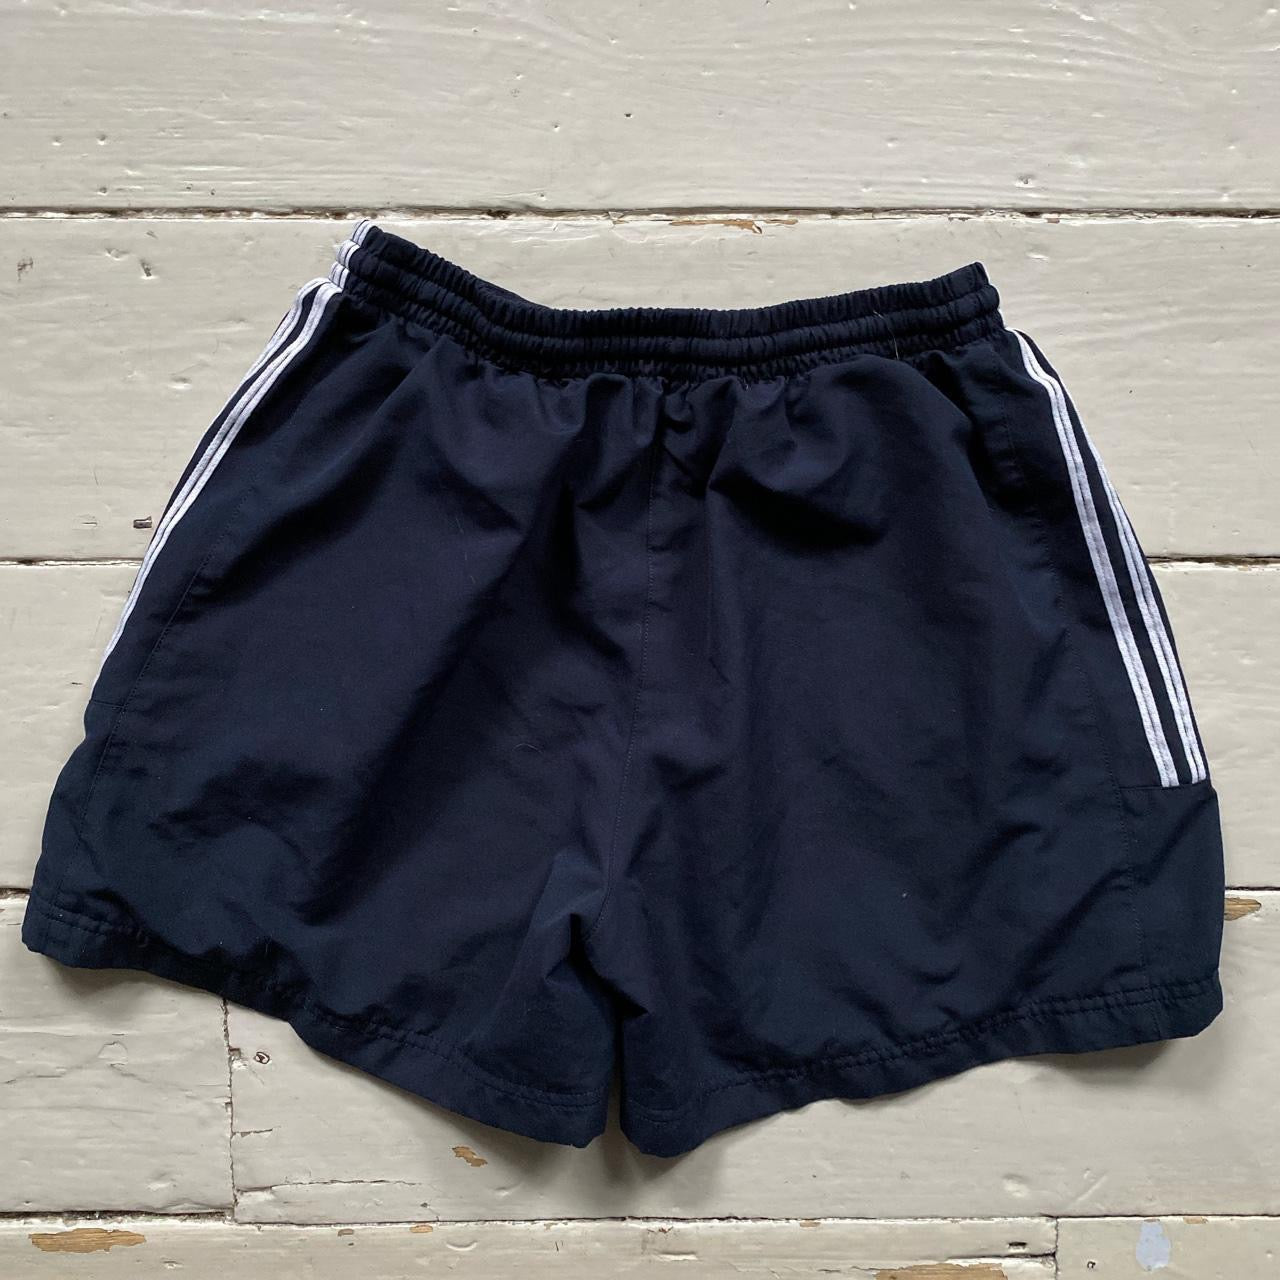 Adidas Womens Shorts (UK 12)